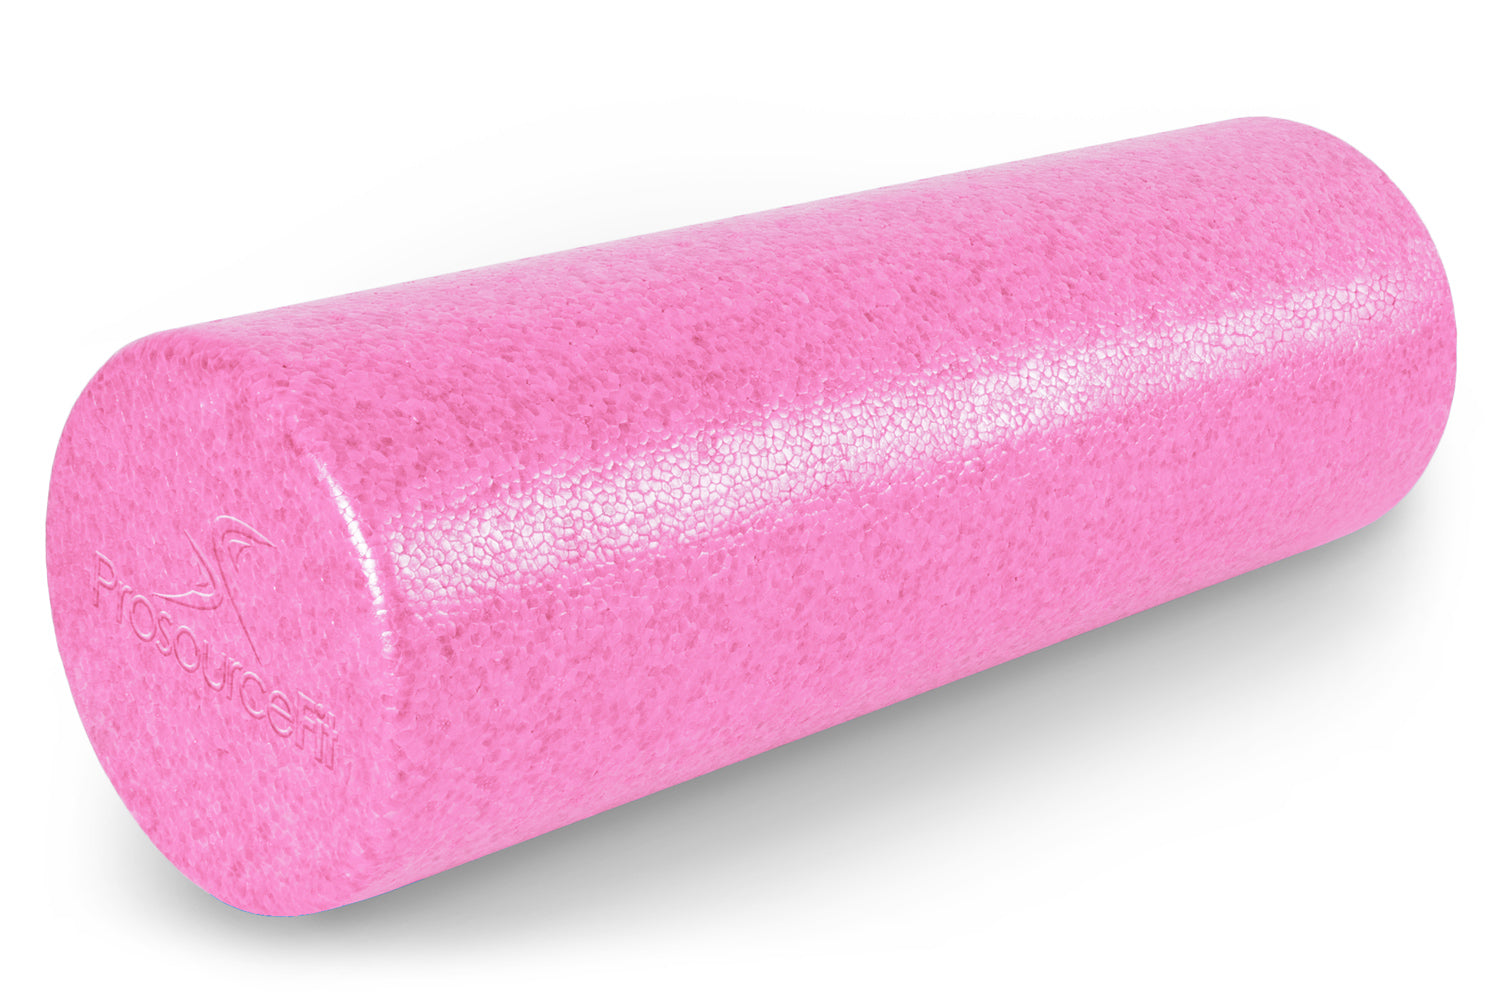 18 x 6 Pink High Density Foam Roller